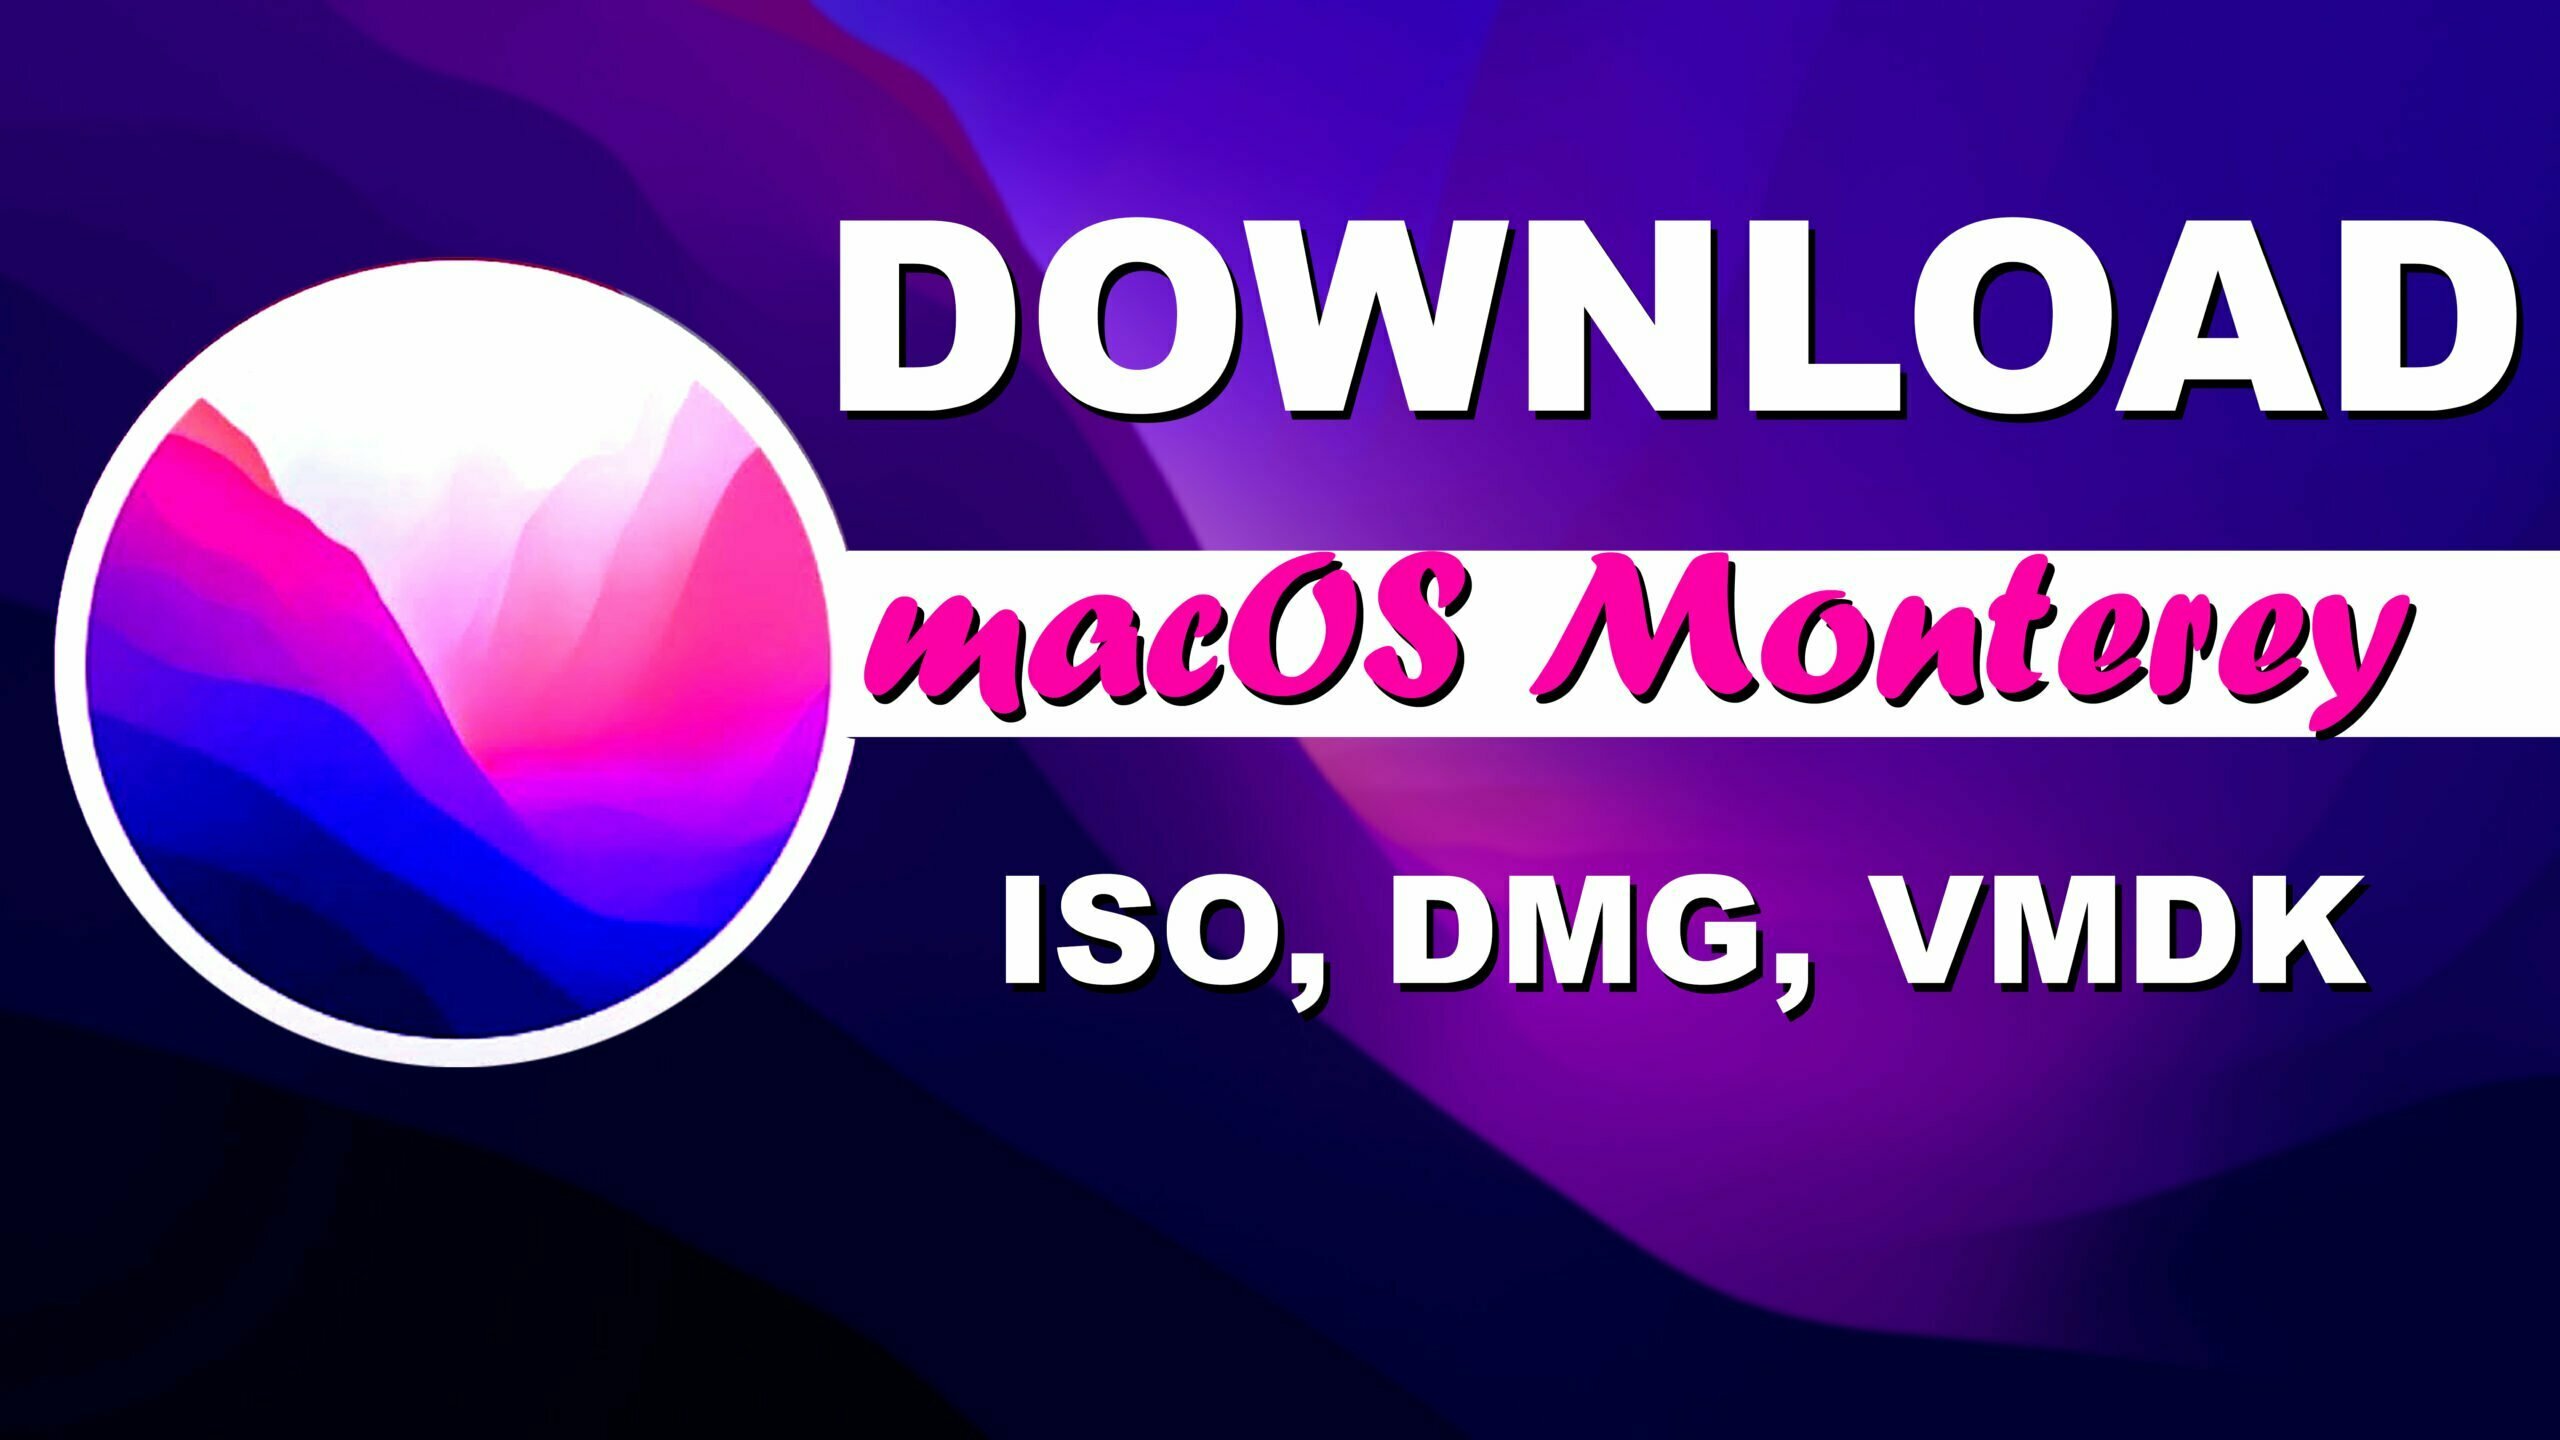 Download macOS Monterey ISO, DMG, VMDK Files